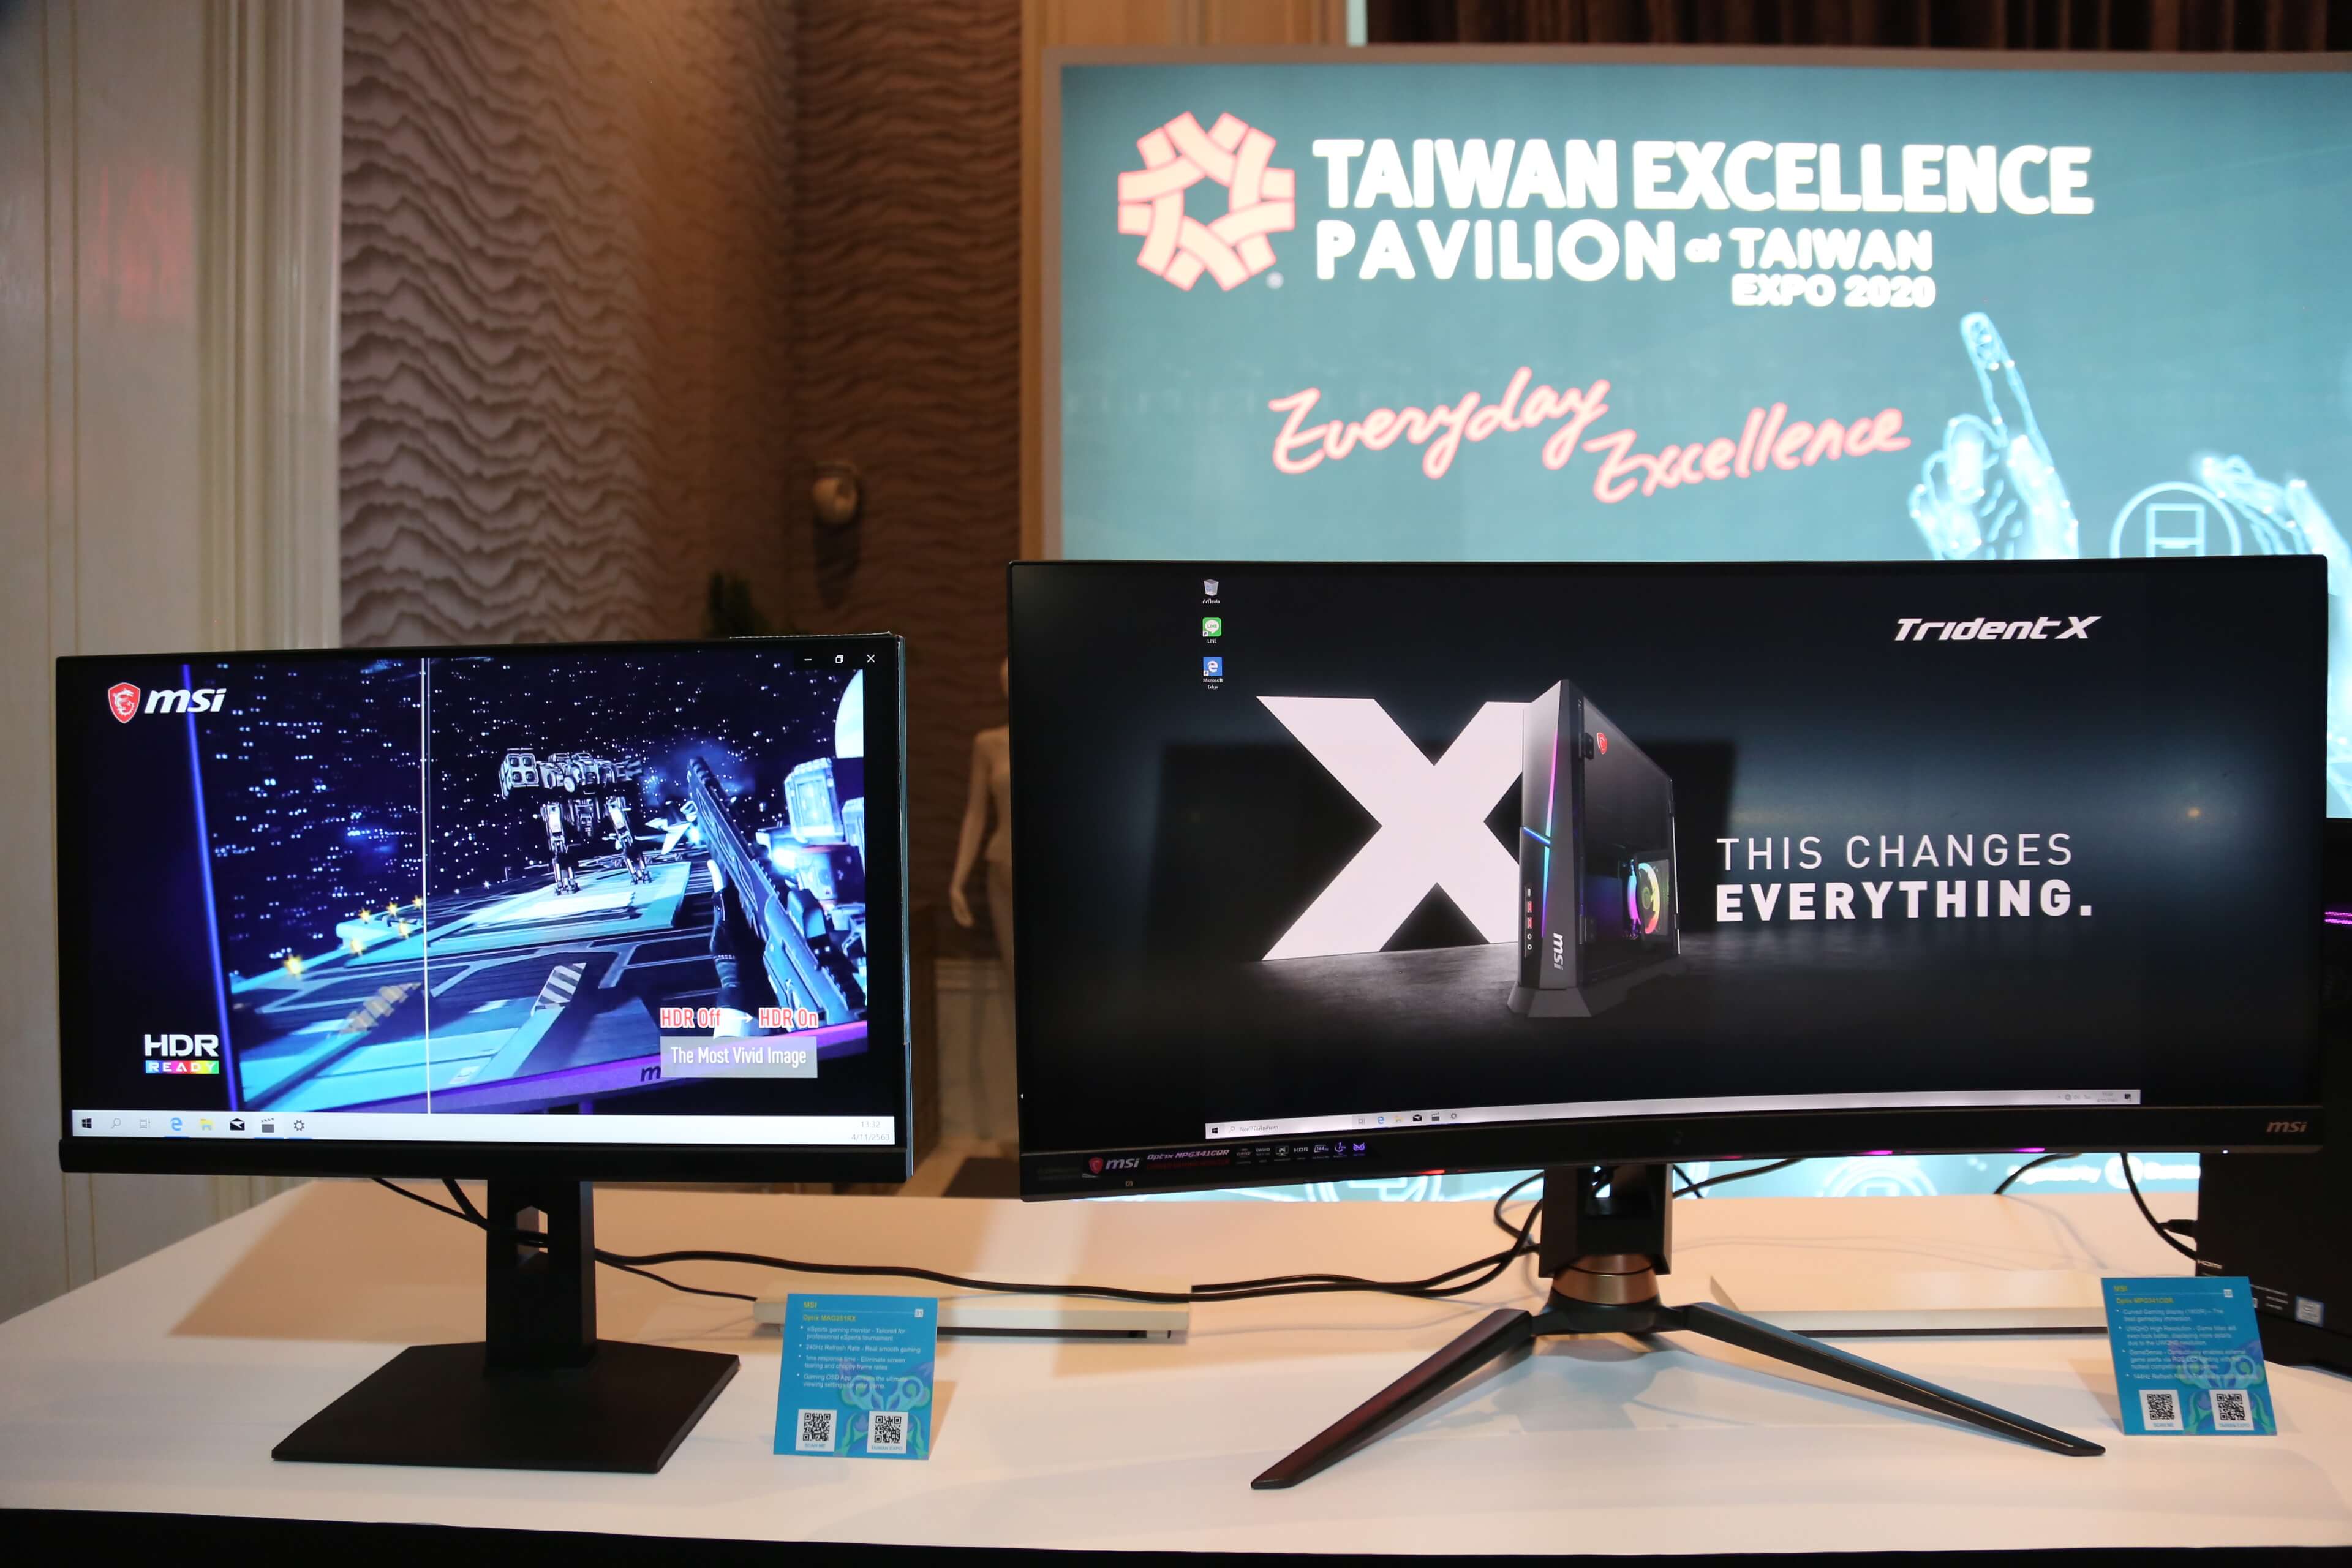 คว้าโอกาสทางธุรกิจใหม่ๆ กับ Taiwan Expo 2020 วันที่ 4-6 พฤศจิกายน 2563 เวลา 10.00-17.00 น. ณ ชั้น 5 พาวิลเลียน บอลรูม โรงแรมโรสวูด